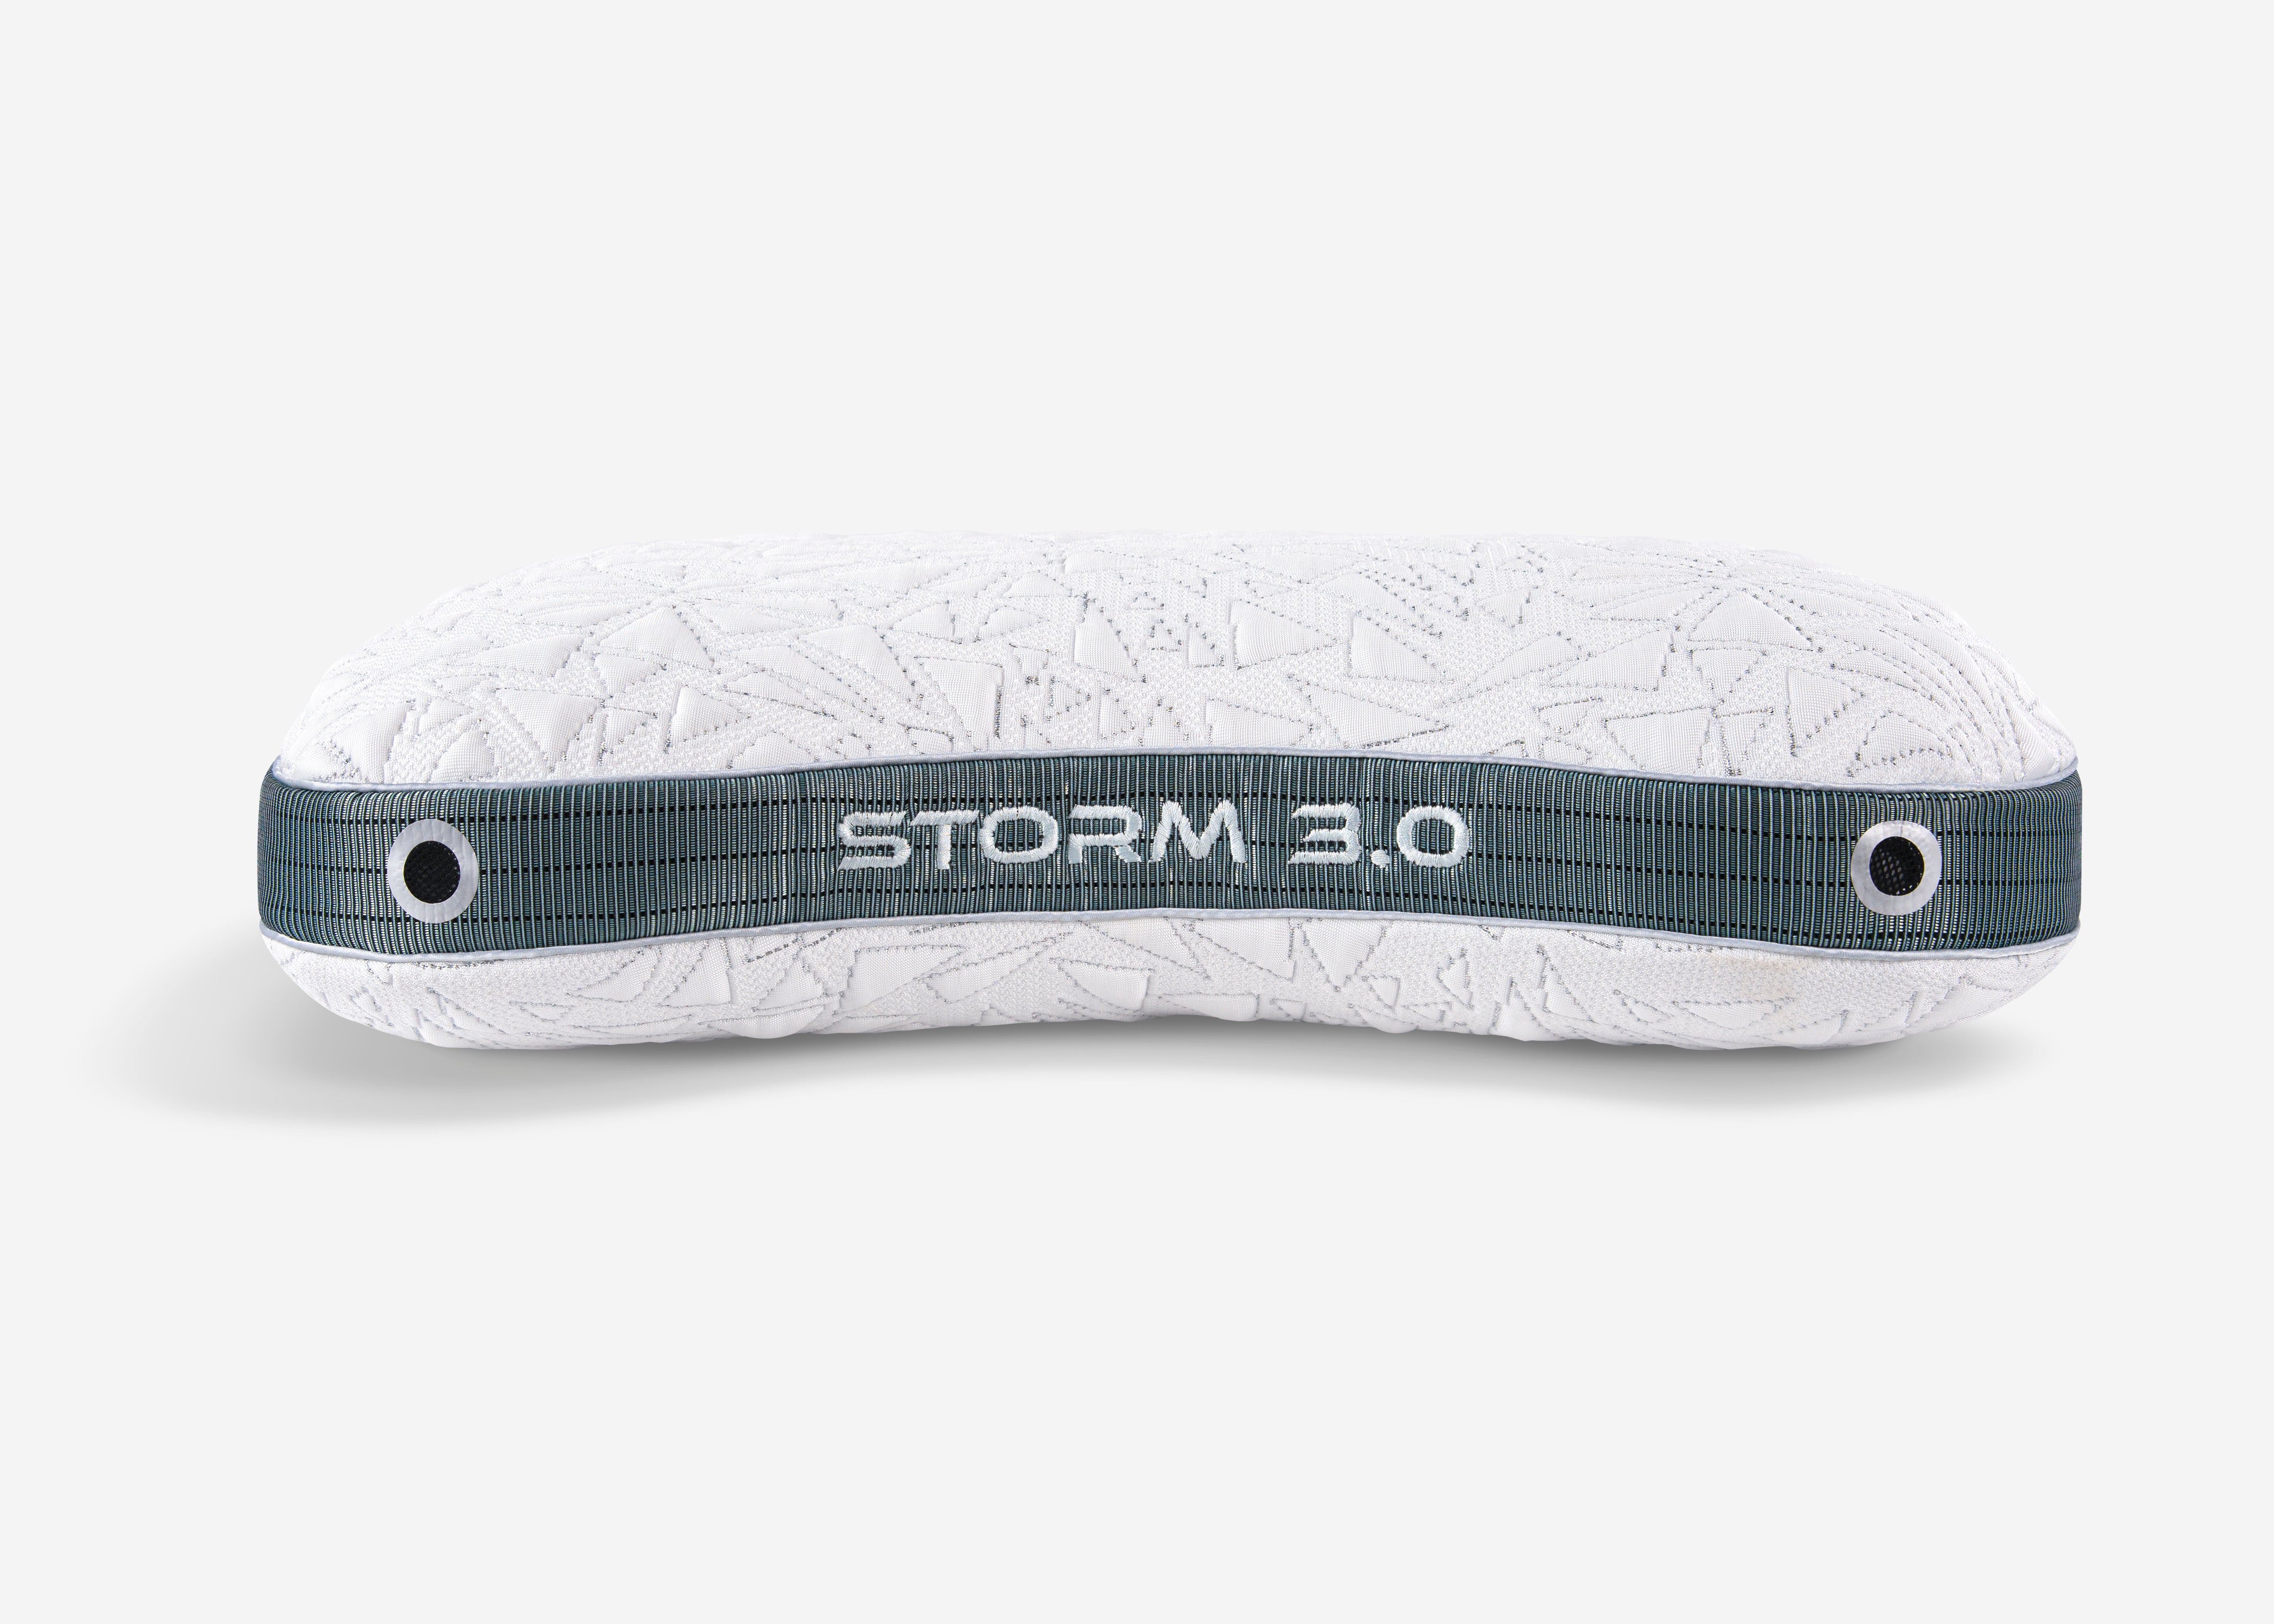 Storm Cuddle Curve Performance Pillow 3.0